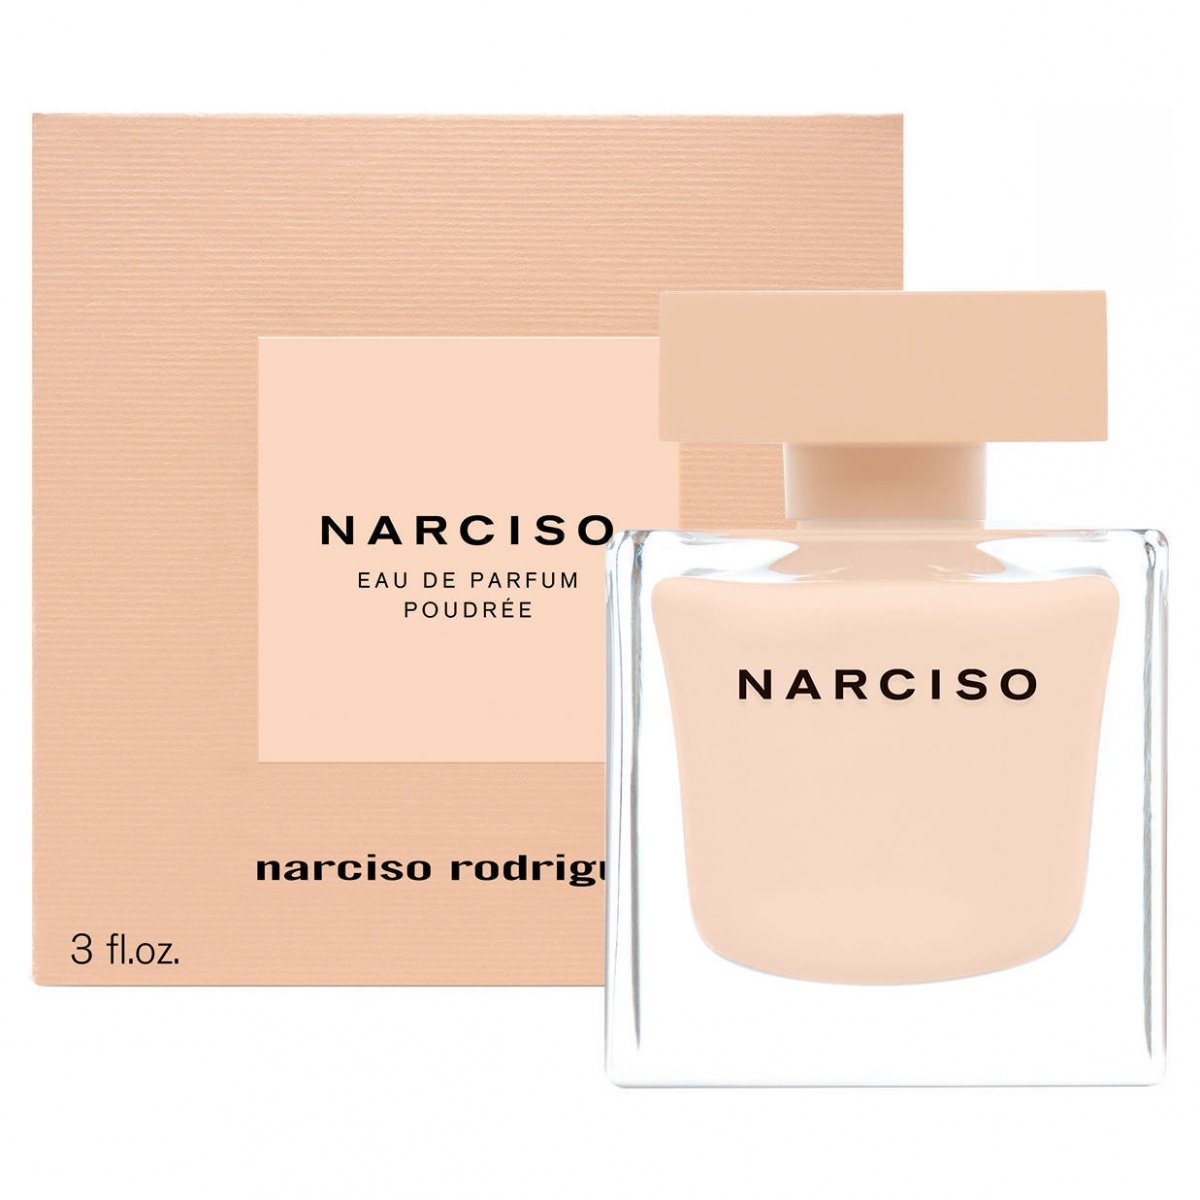 Narciso by Narciso Rodriguez (Eau de Parfum Poudrée) » Reviews 